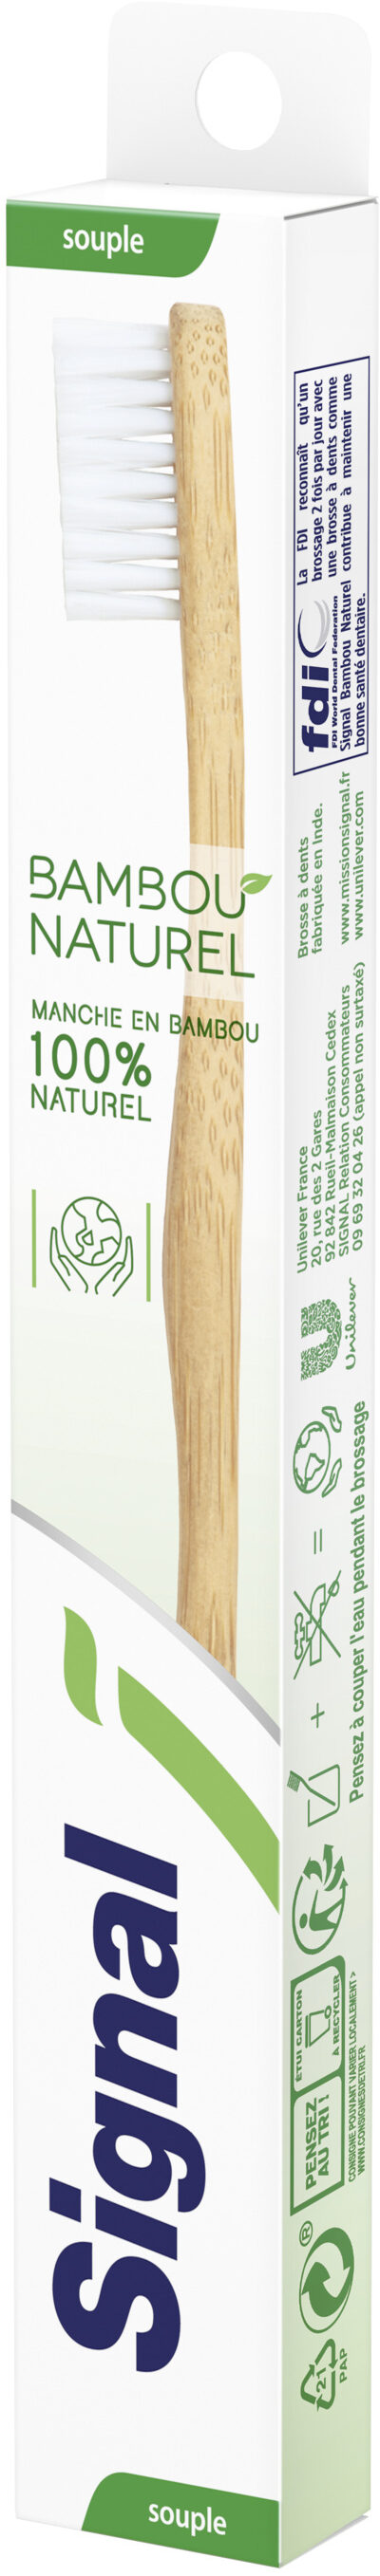 Signal Brosse à Dents Bambou Naturel Souple x1 - Produit - fr